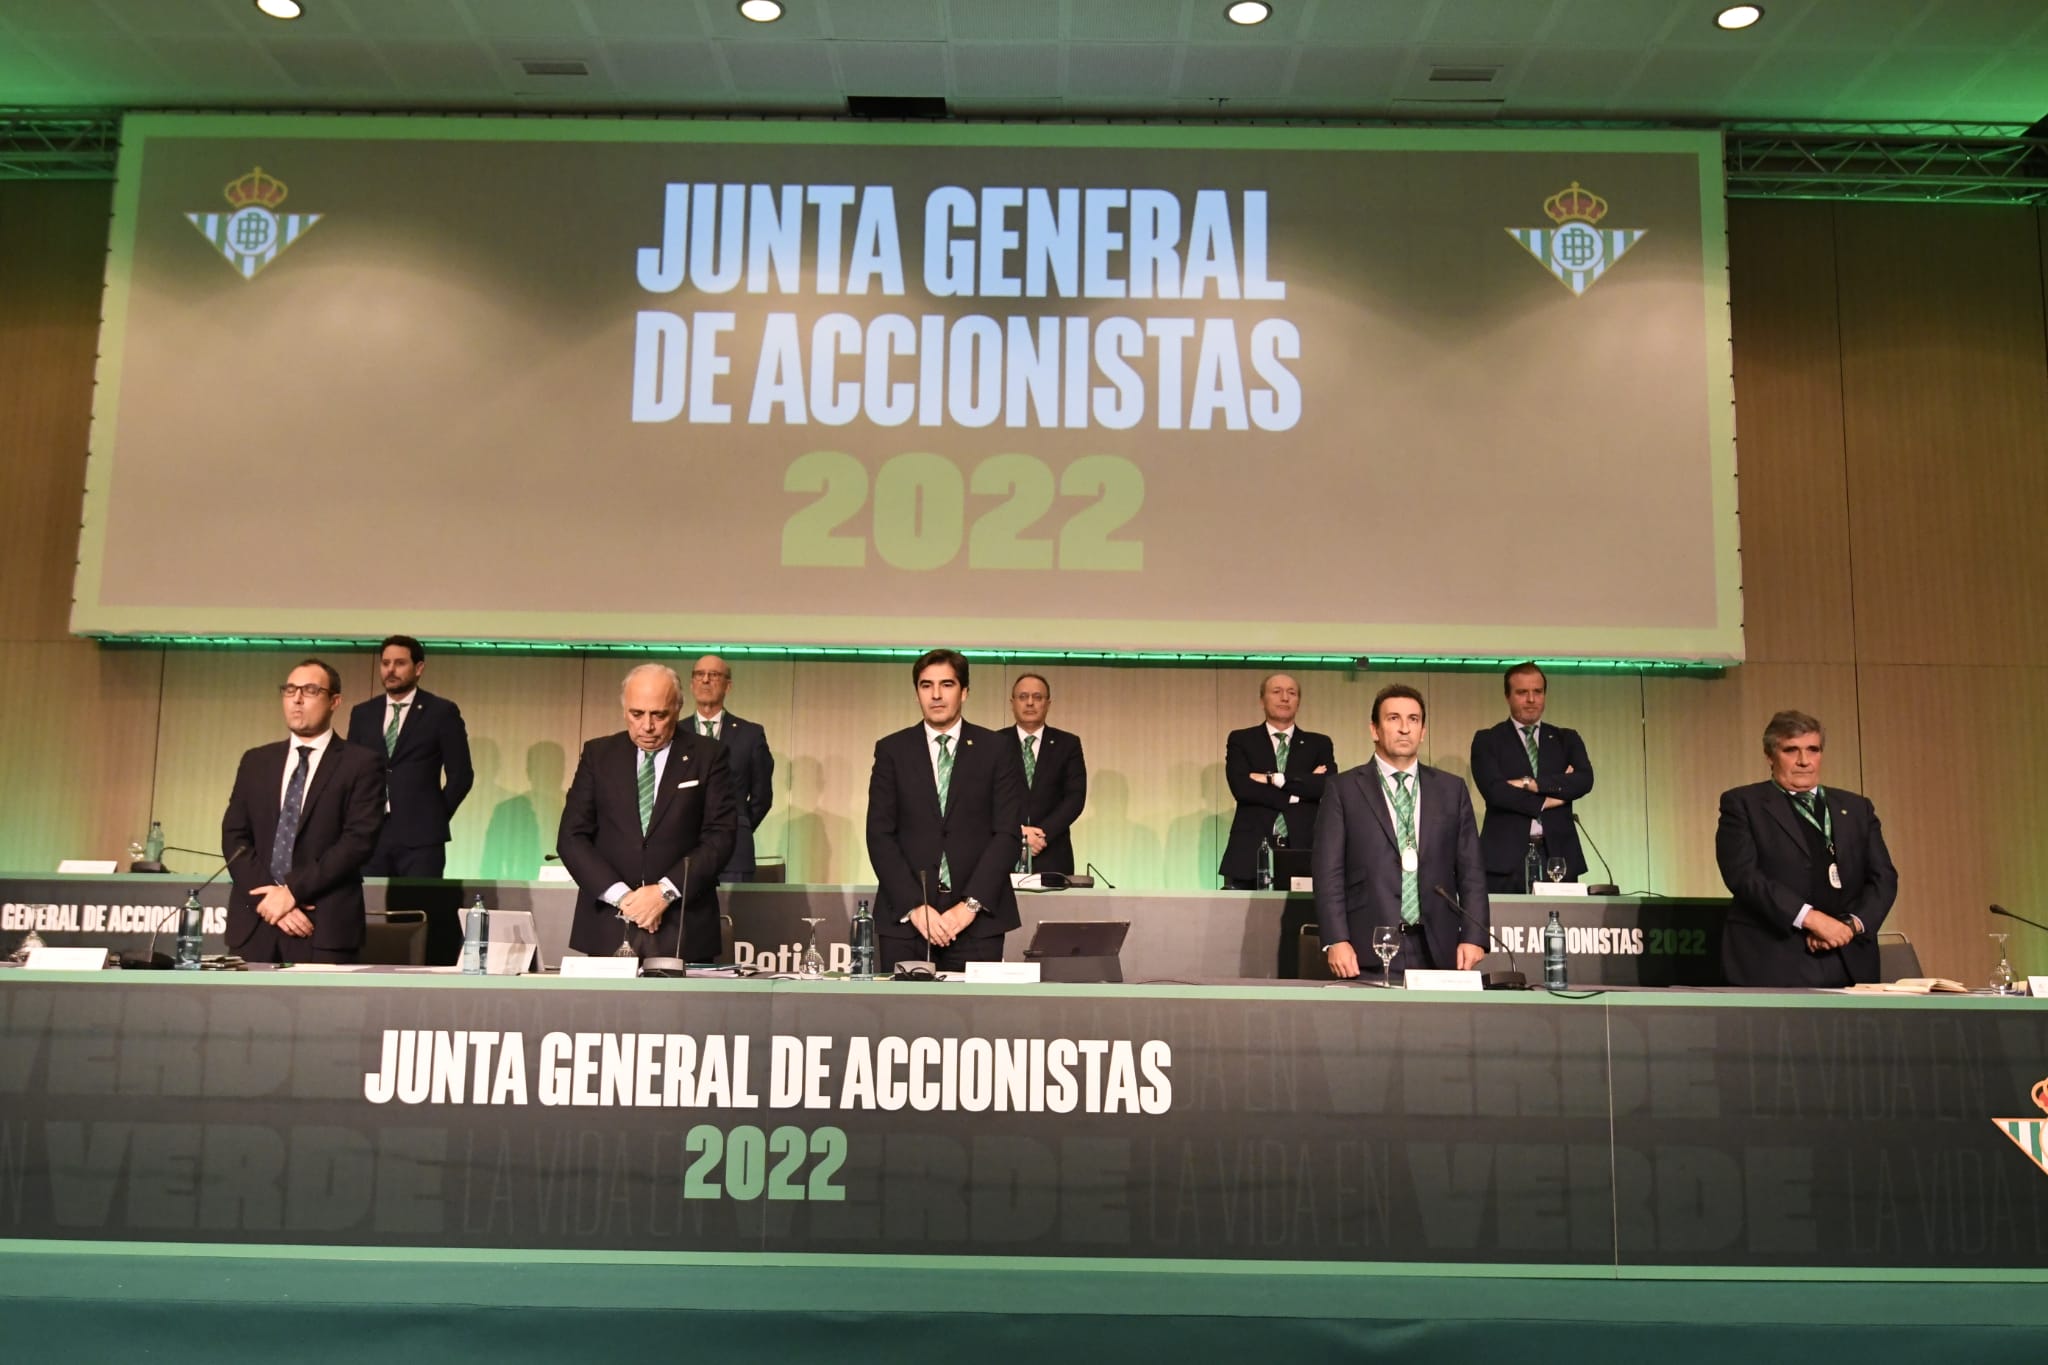 El consejo del Betis en la Junta de 2022 (Foto: Kiko Hurtado)